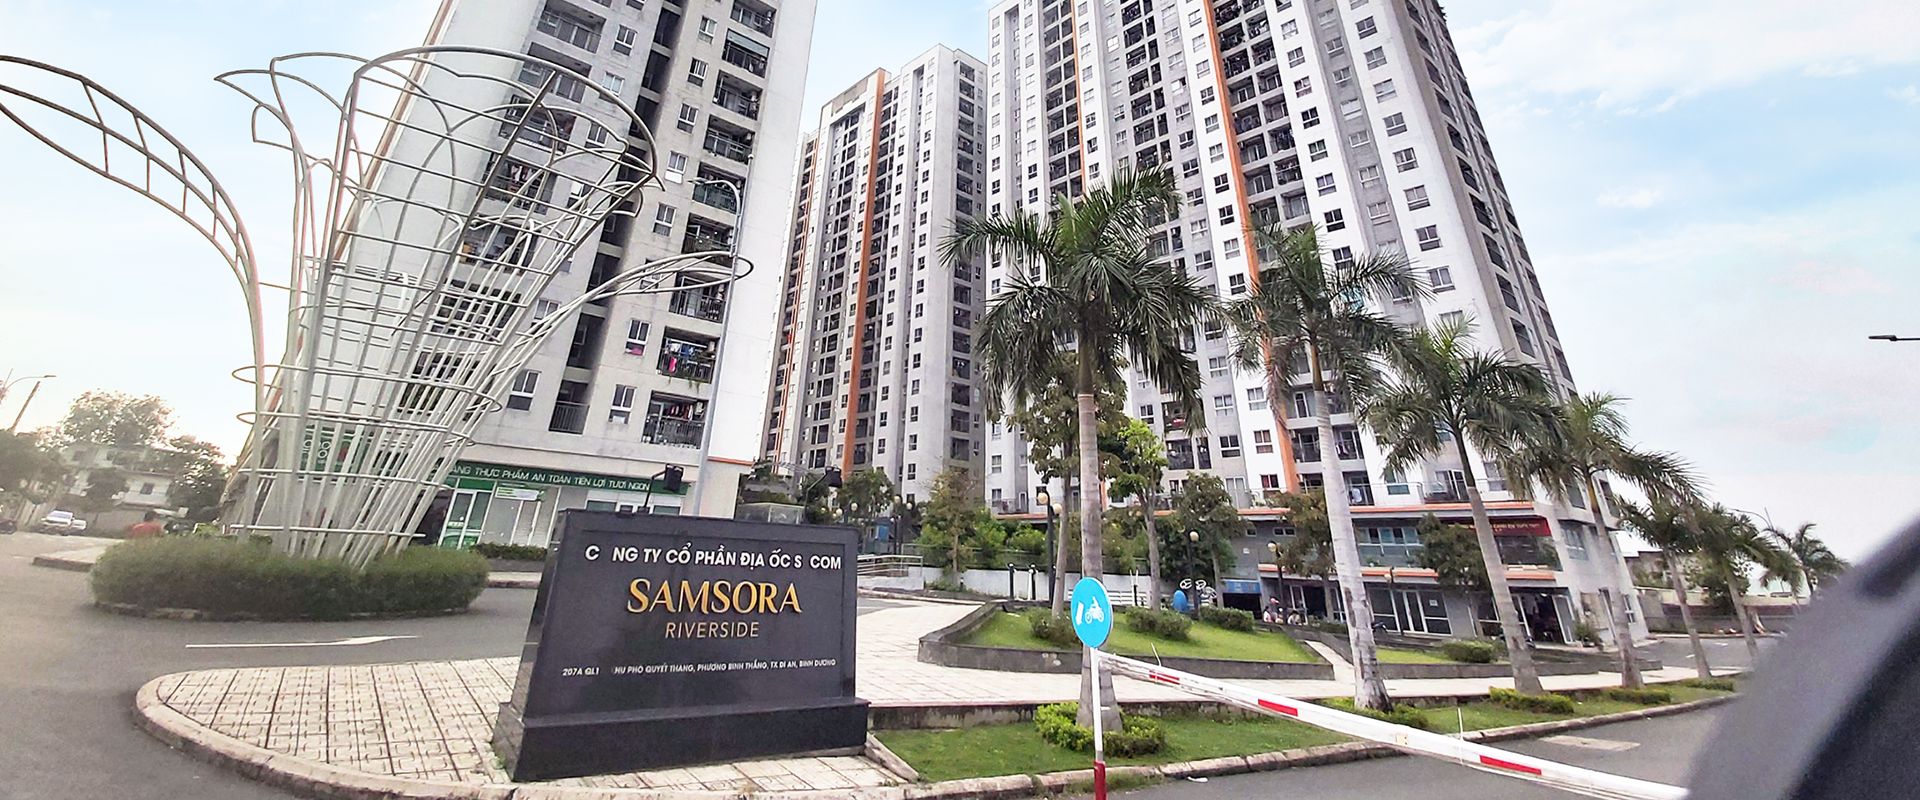 Những câu hỏi thường gặp về chung cư Samsora Riverside cho người mua lần đầu tham khảo